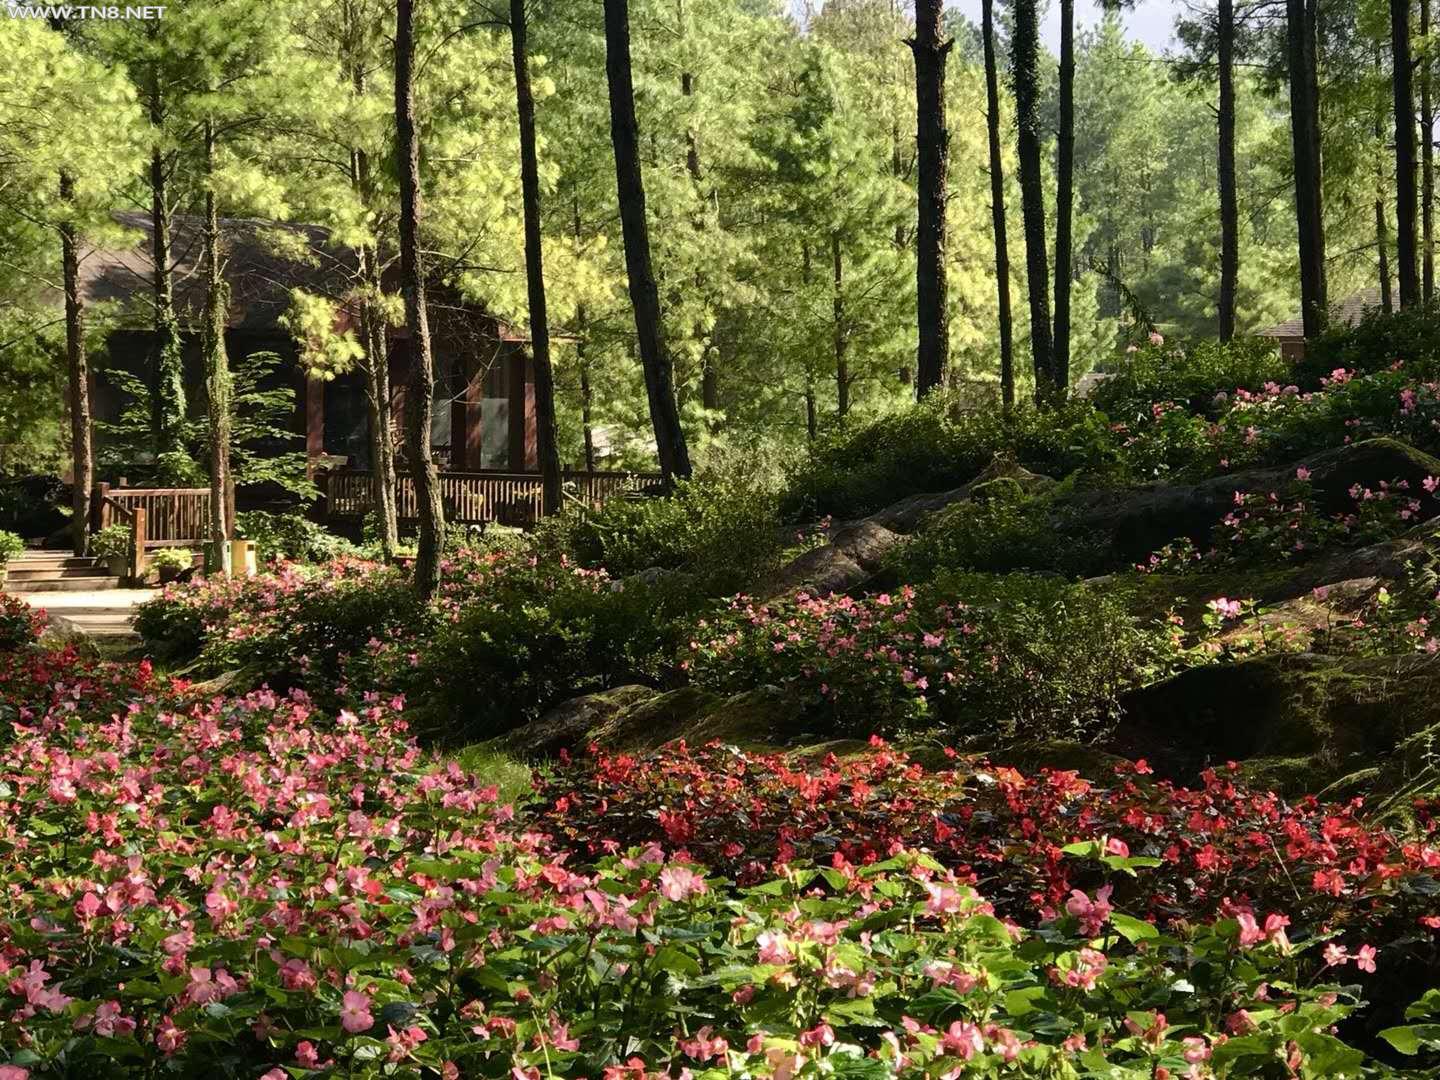  重庆大木林下花园满山海棠 入冬前最后的赏花季